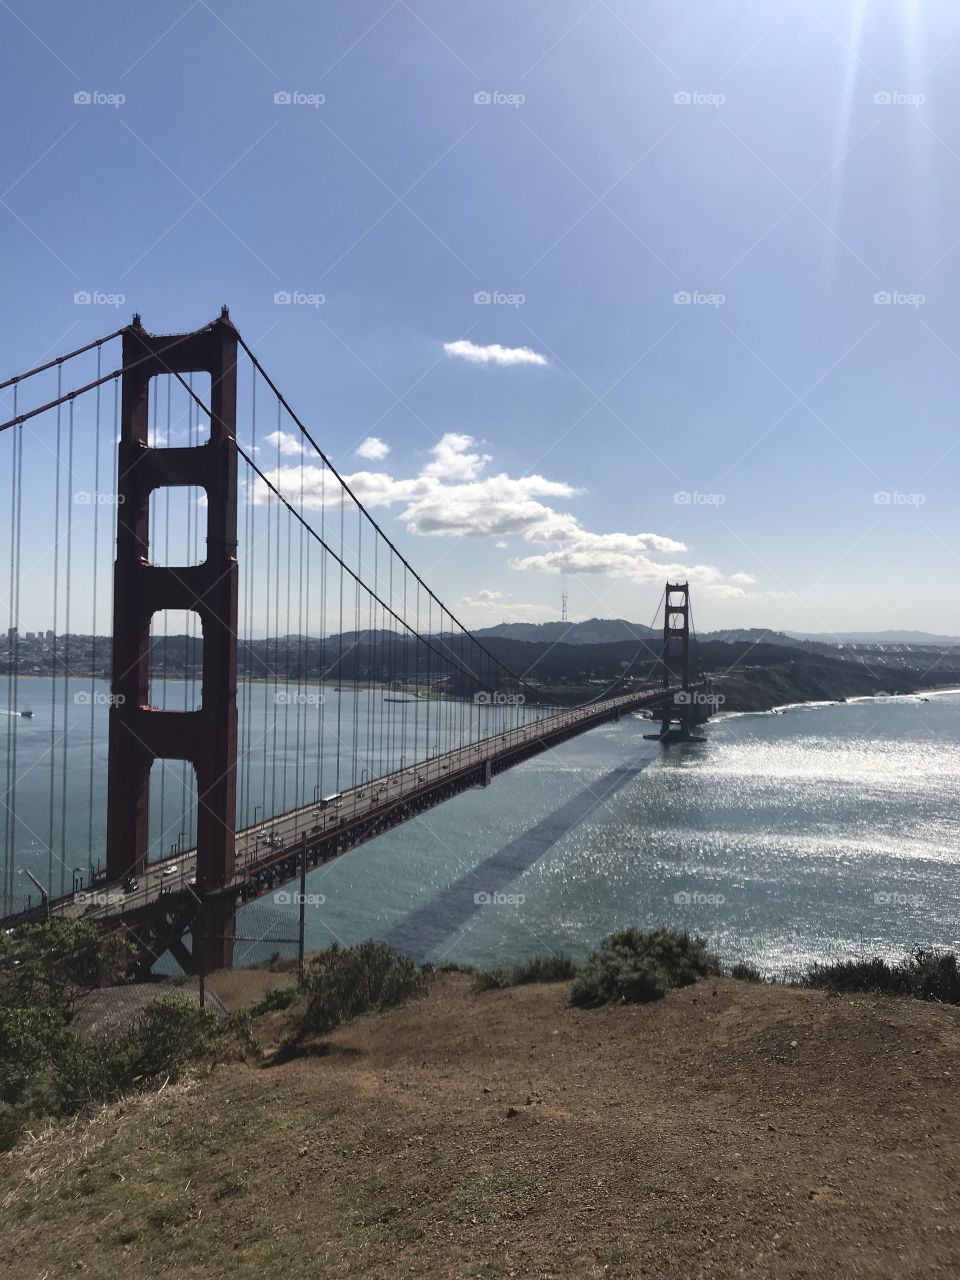 Golden Gate Bridge landscape